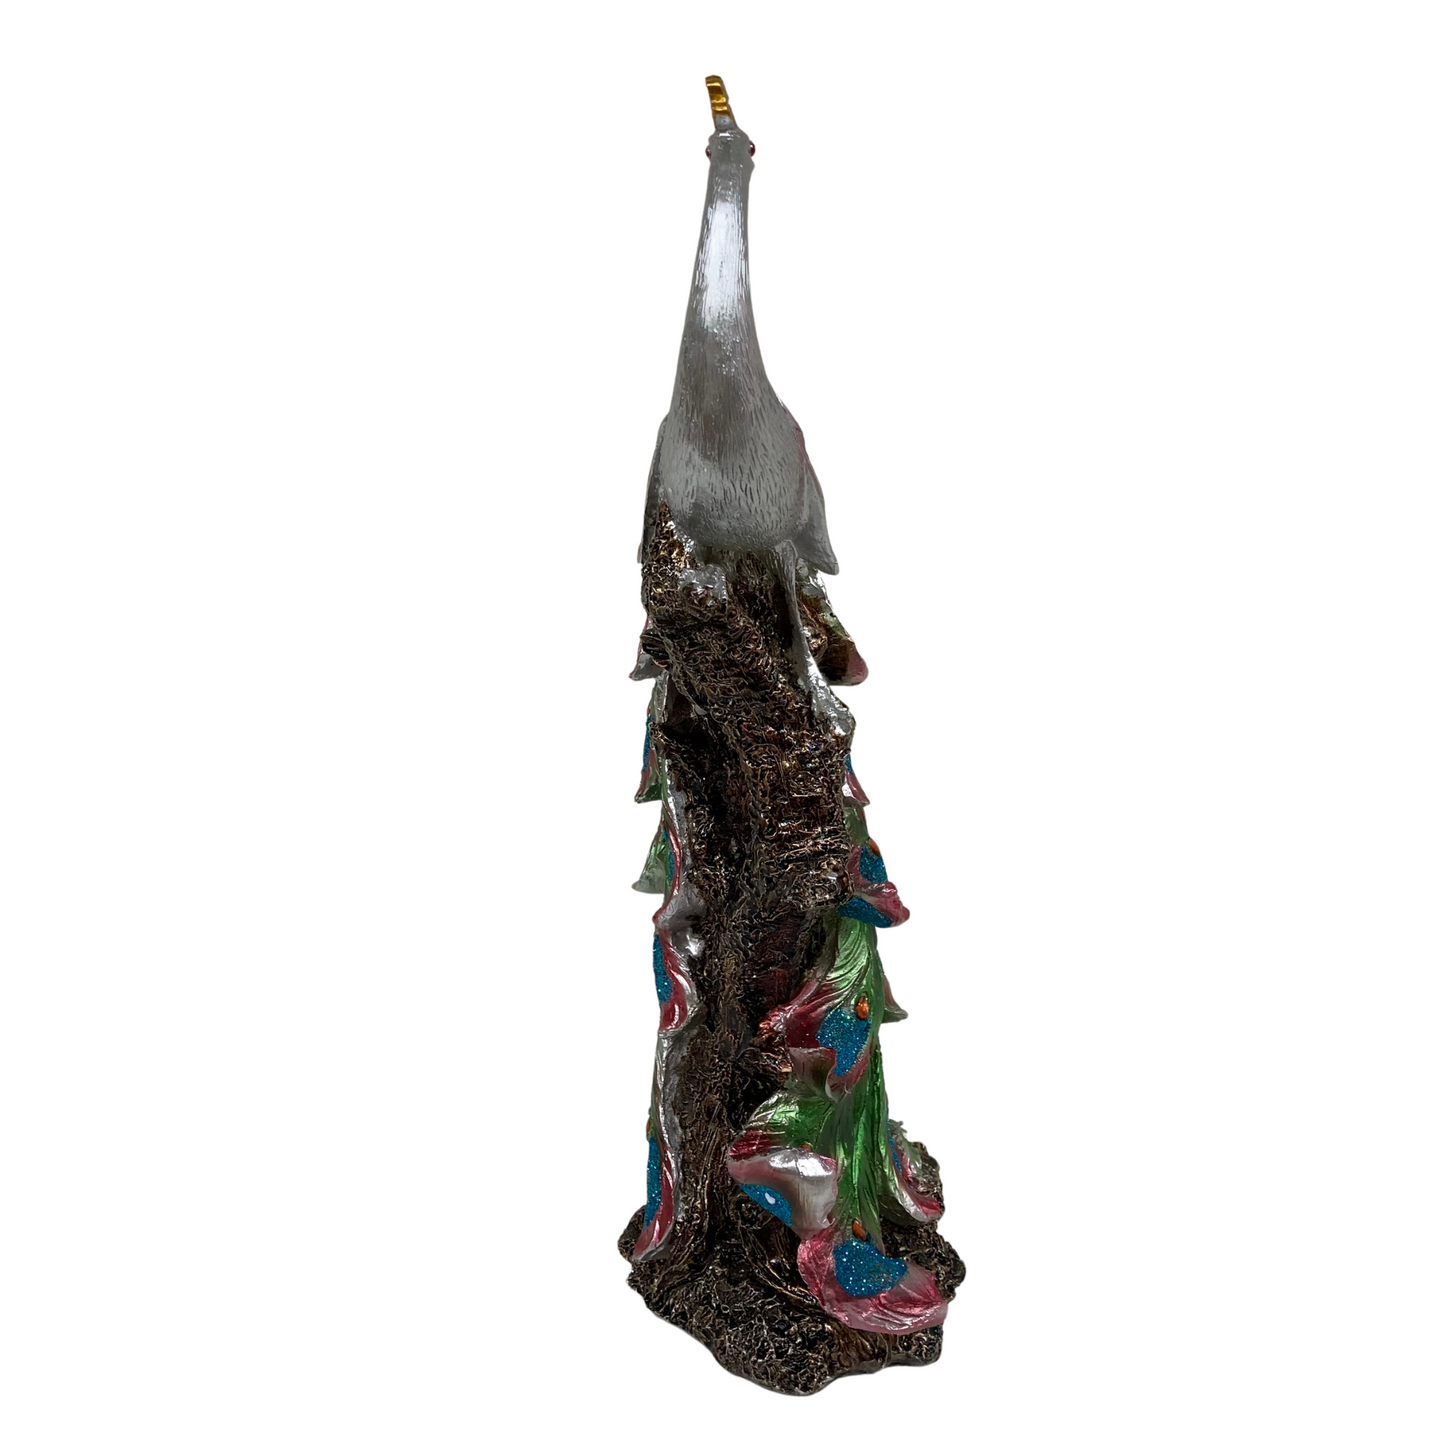 Silver Colourful Peacock Statue